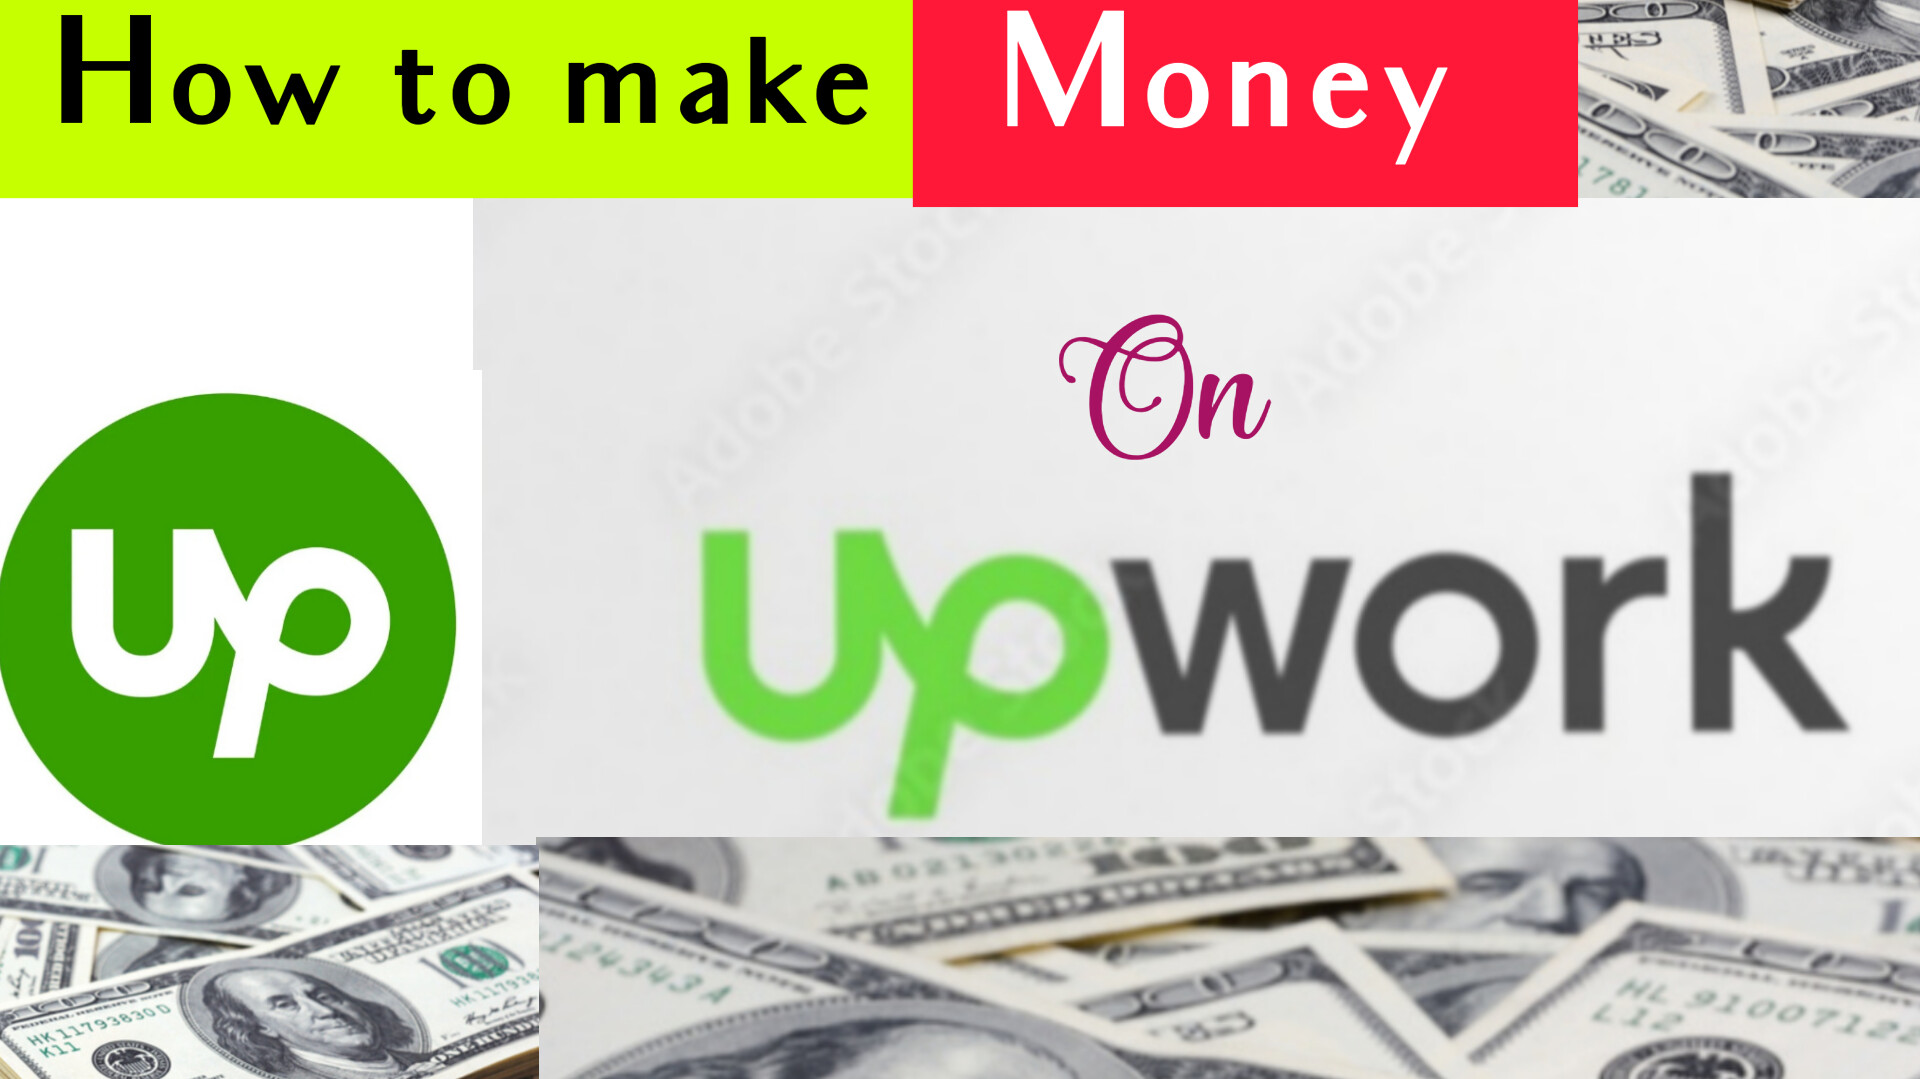 Upwork | Up Work | Upworkjobs | Upwork Freelancer | Upwork Website